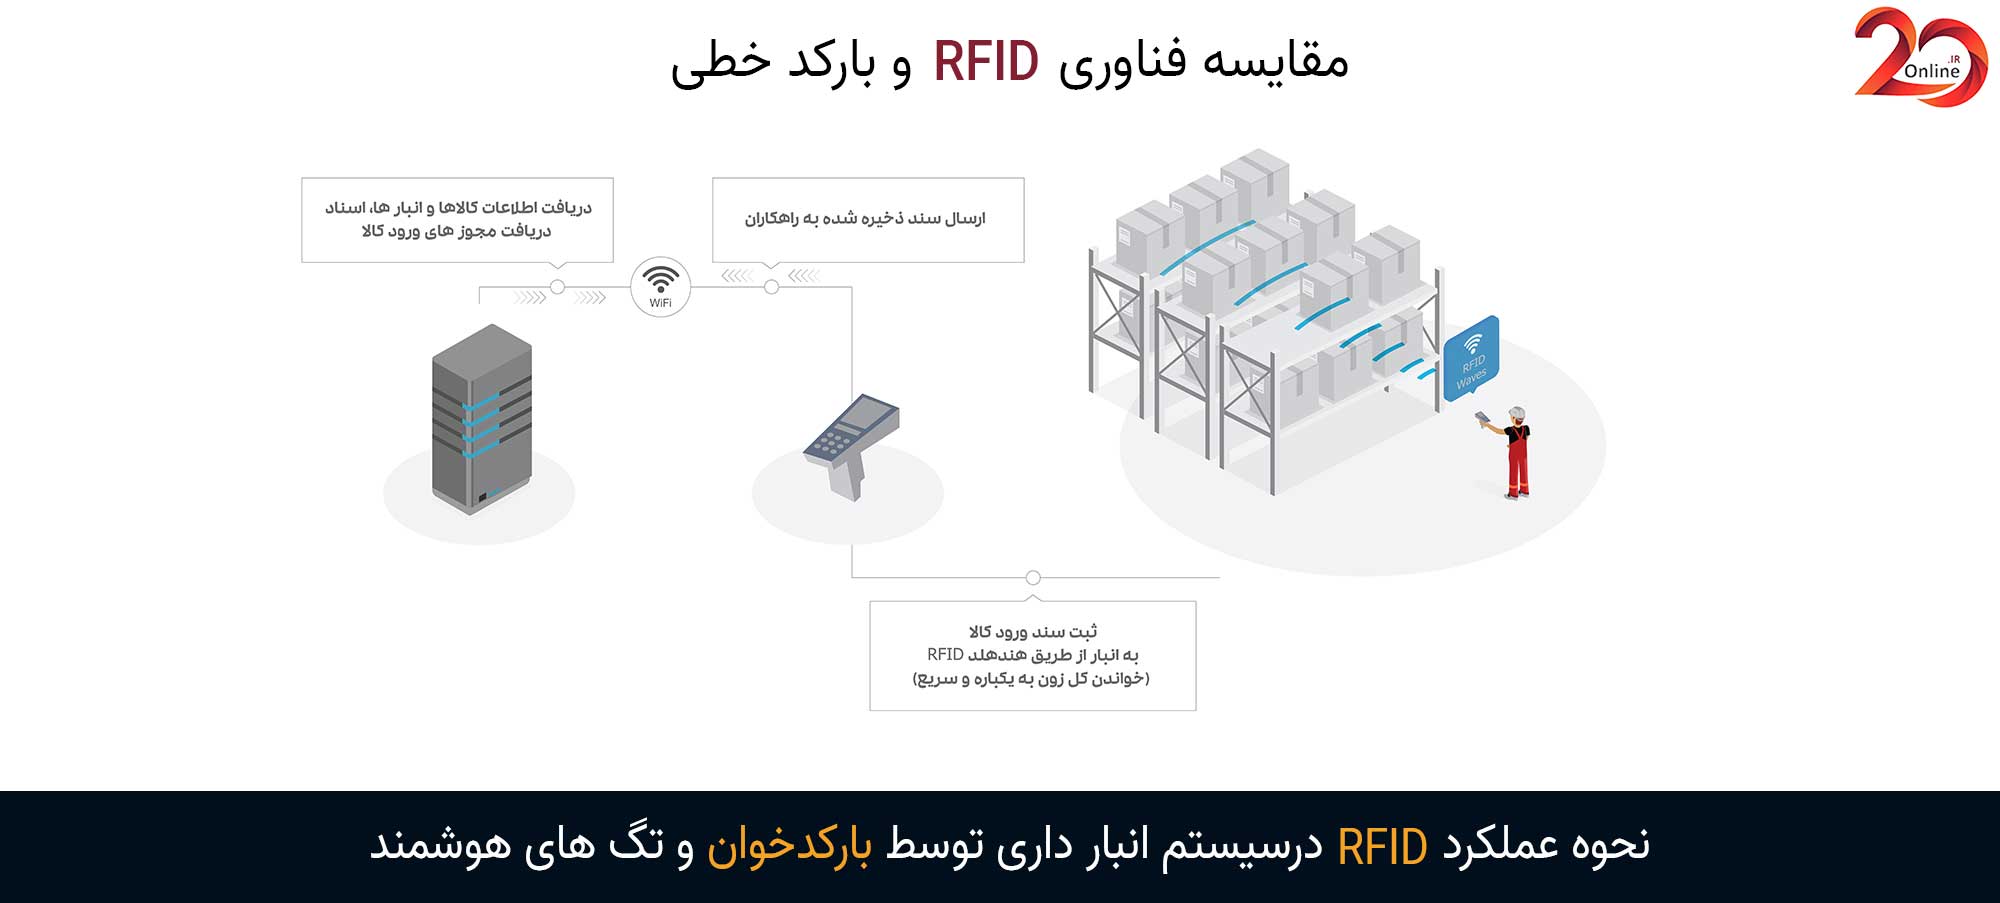 نحوه عملکرد فناوری RFID در اسکن کردن محصولات